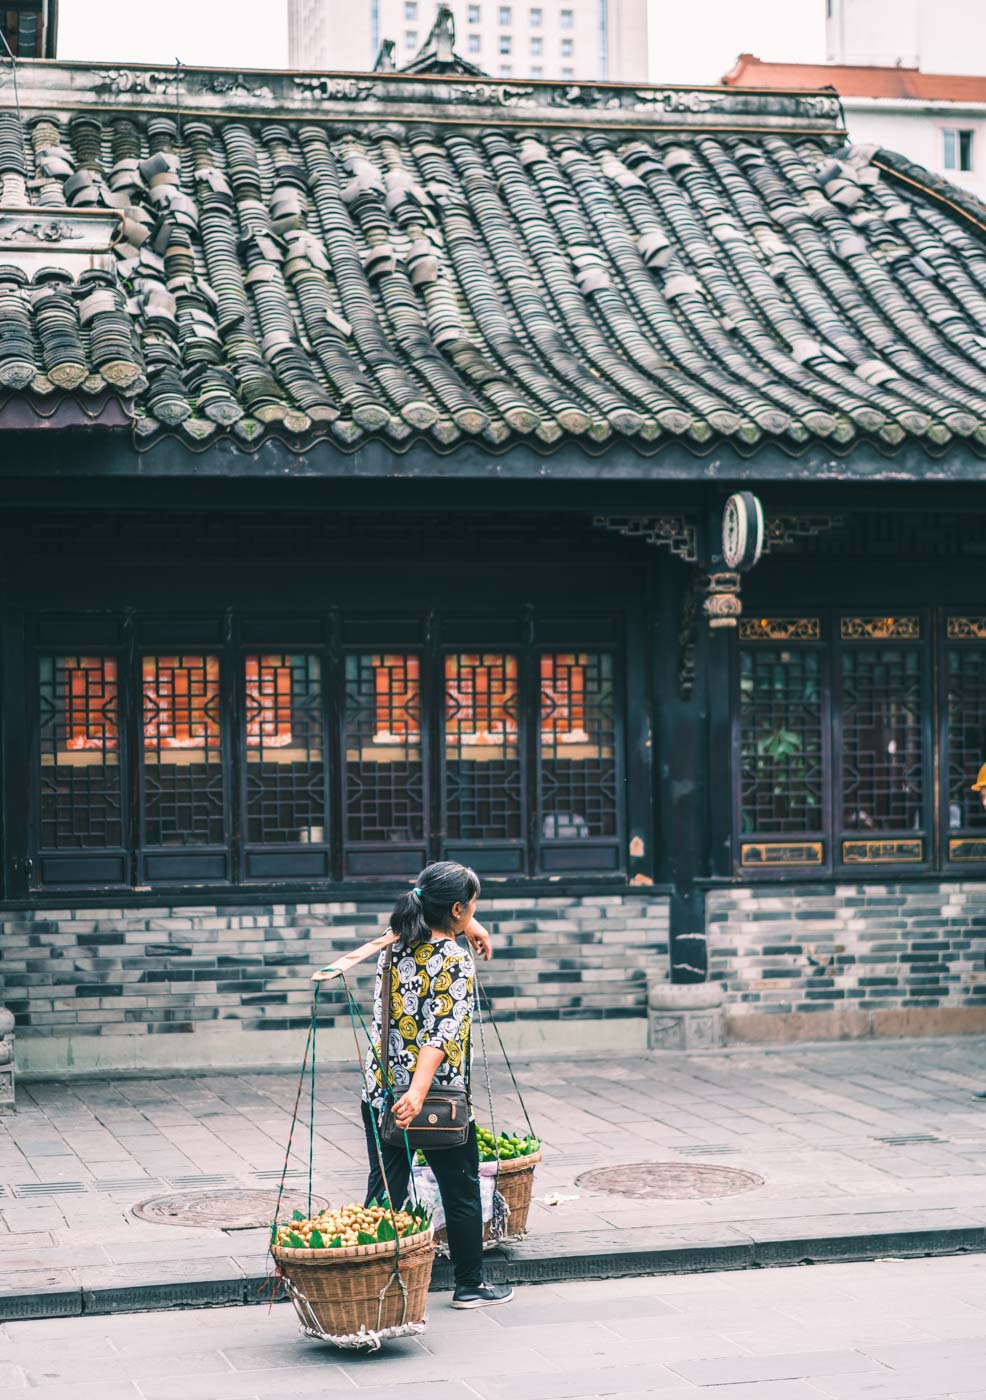 A Chengdu local